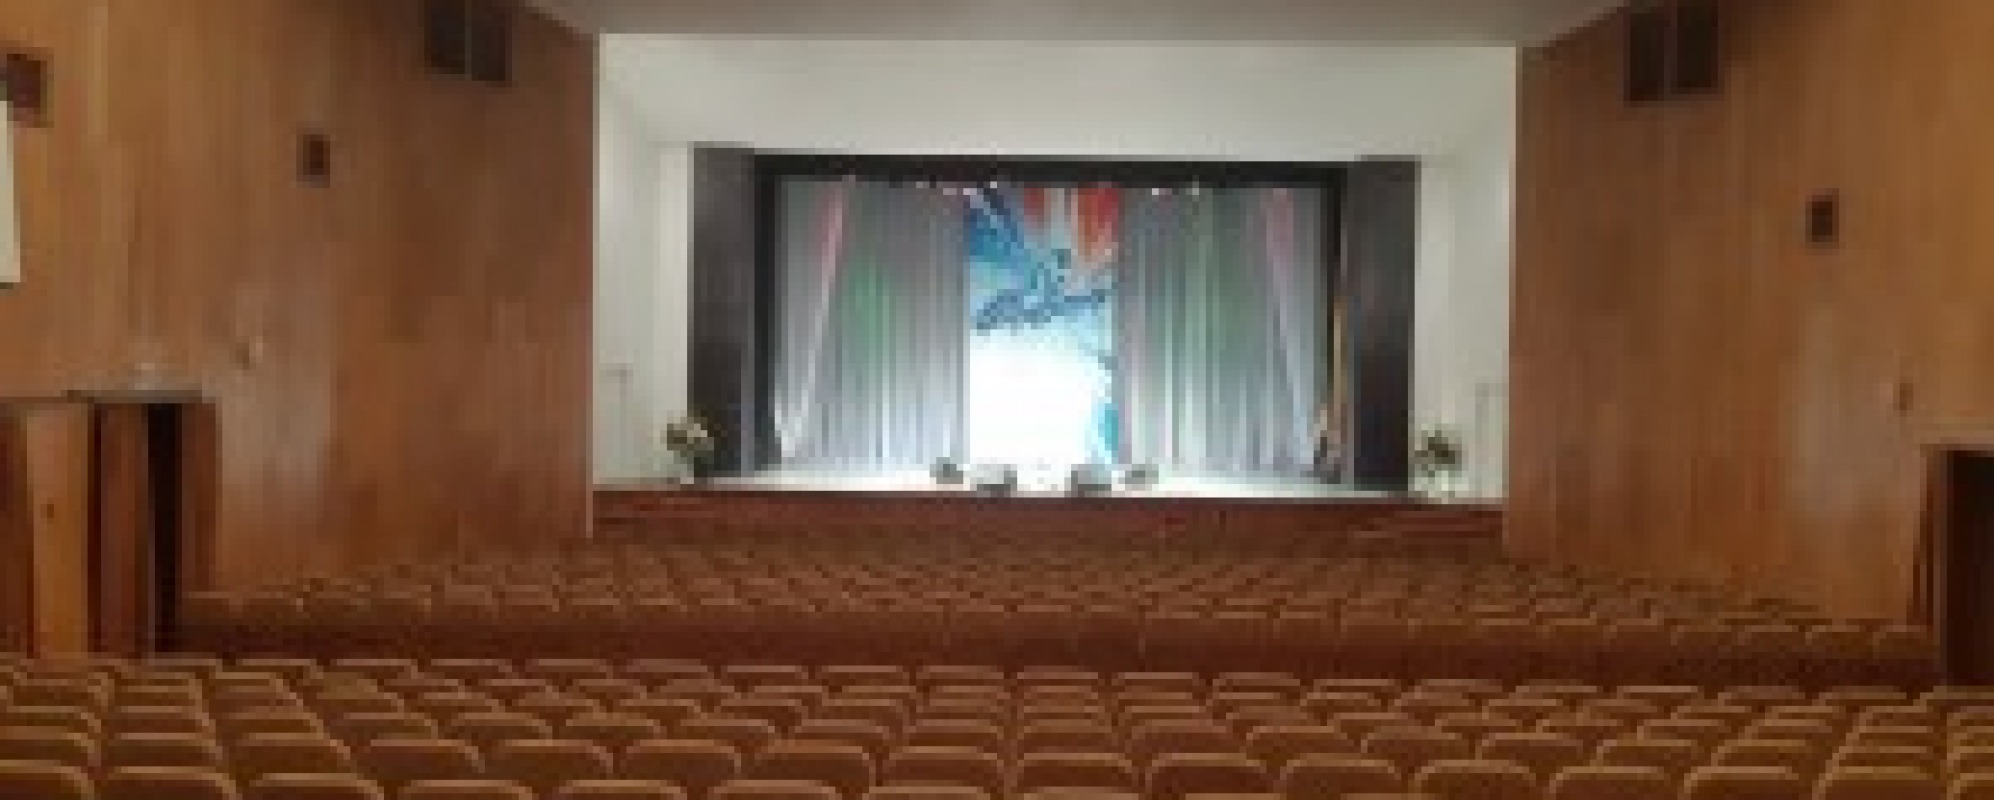 Фотографии концертного зала Концертный зал ДК Строитель имени Д.Н. Мамлеева